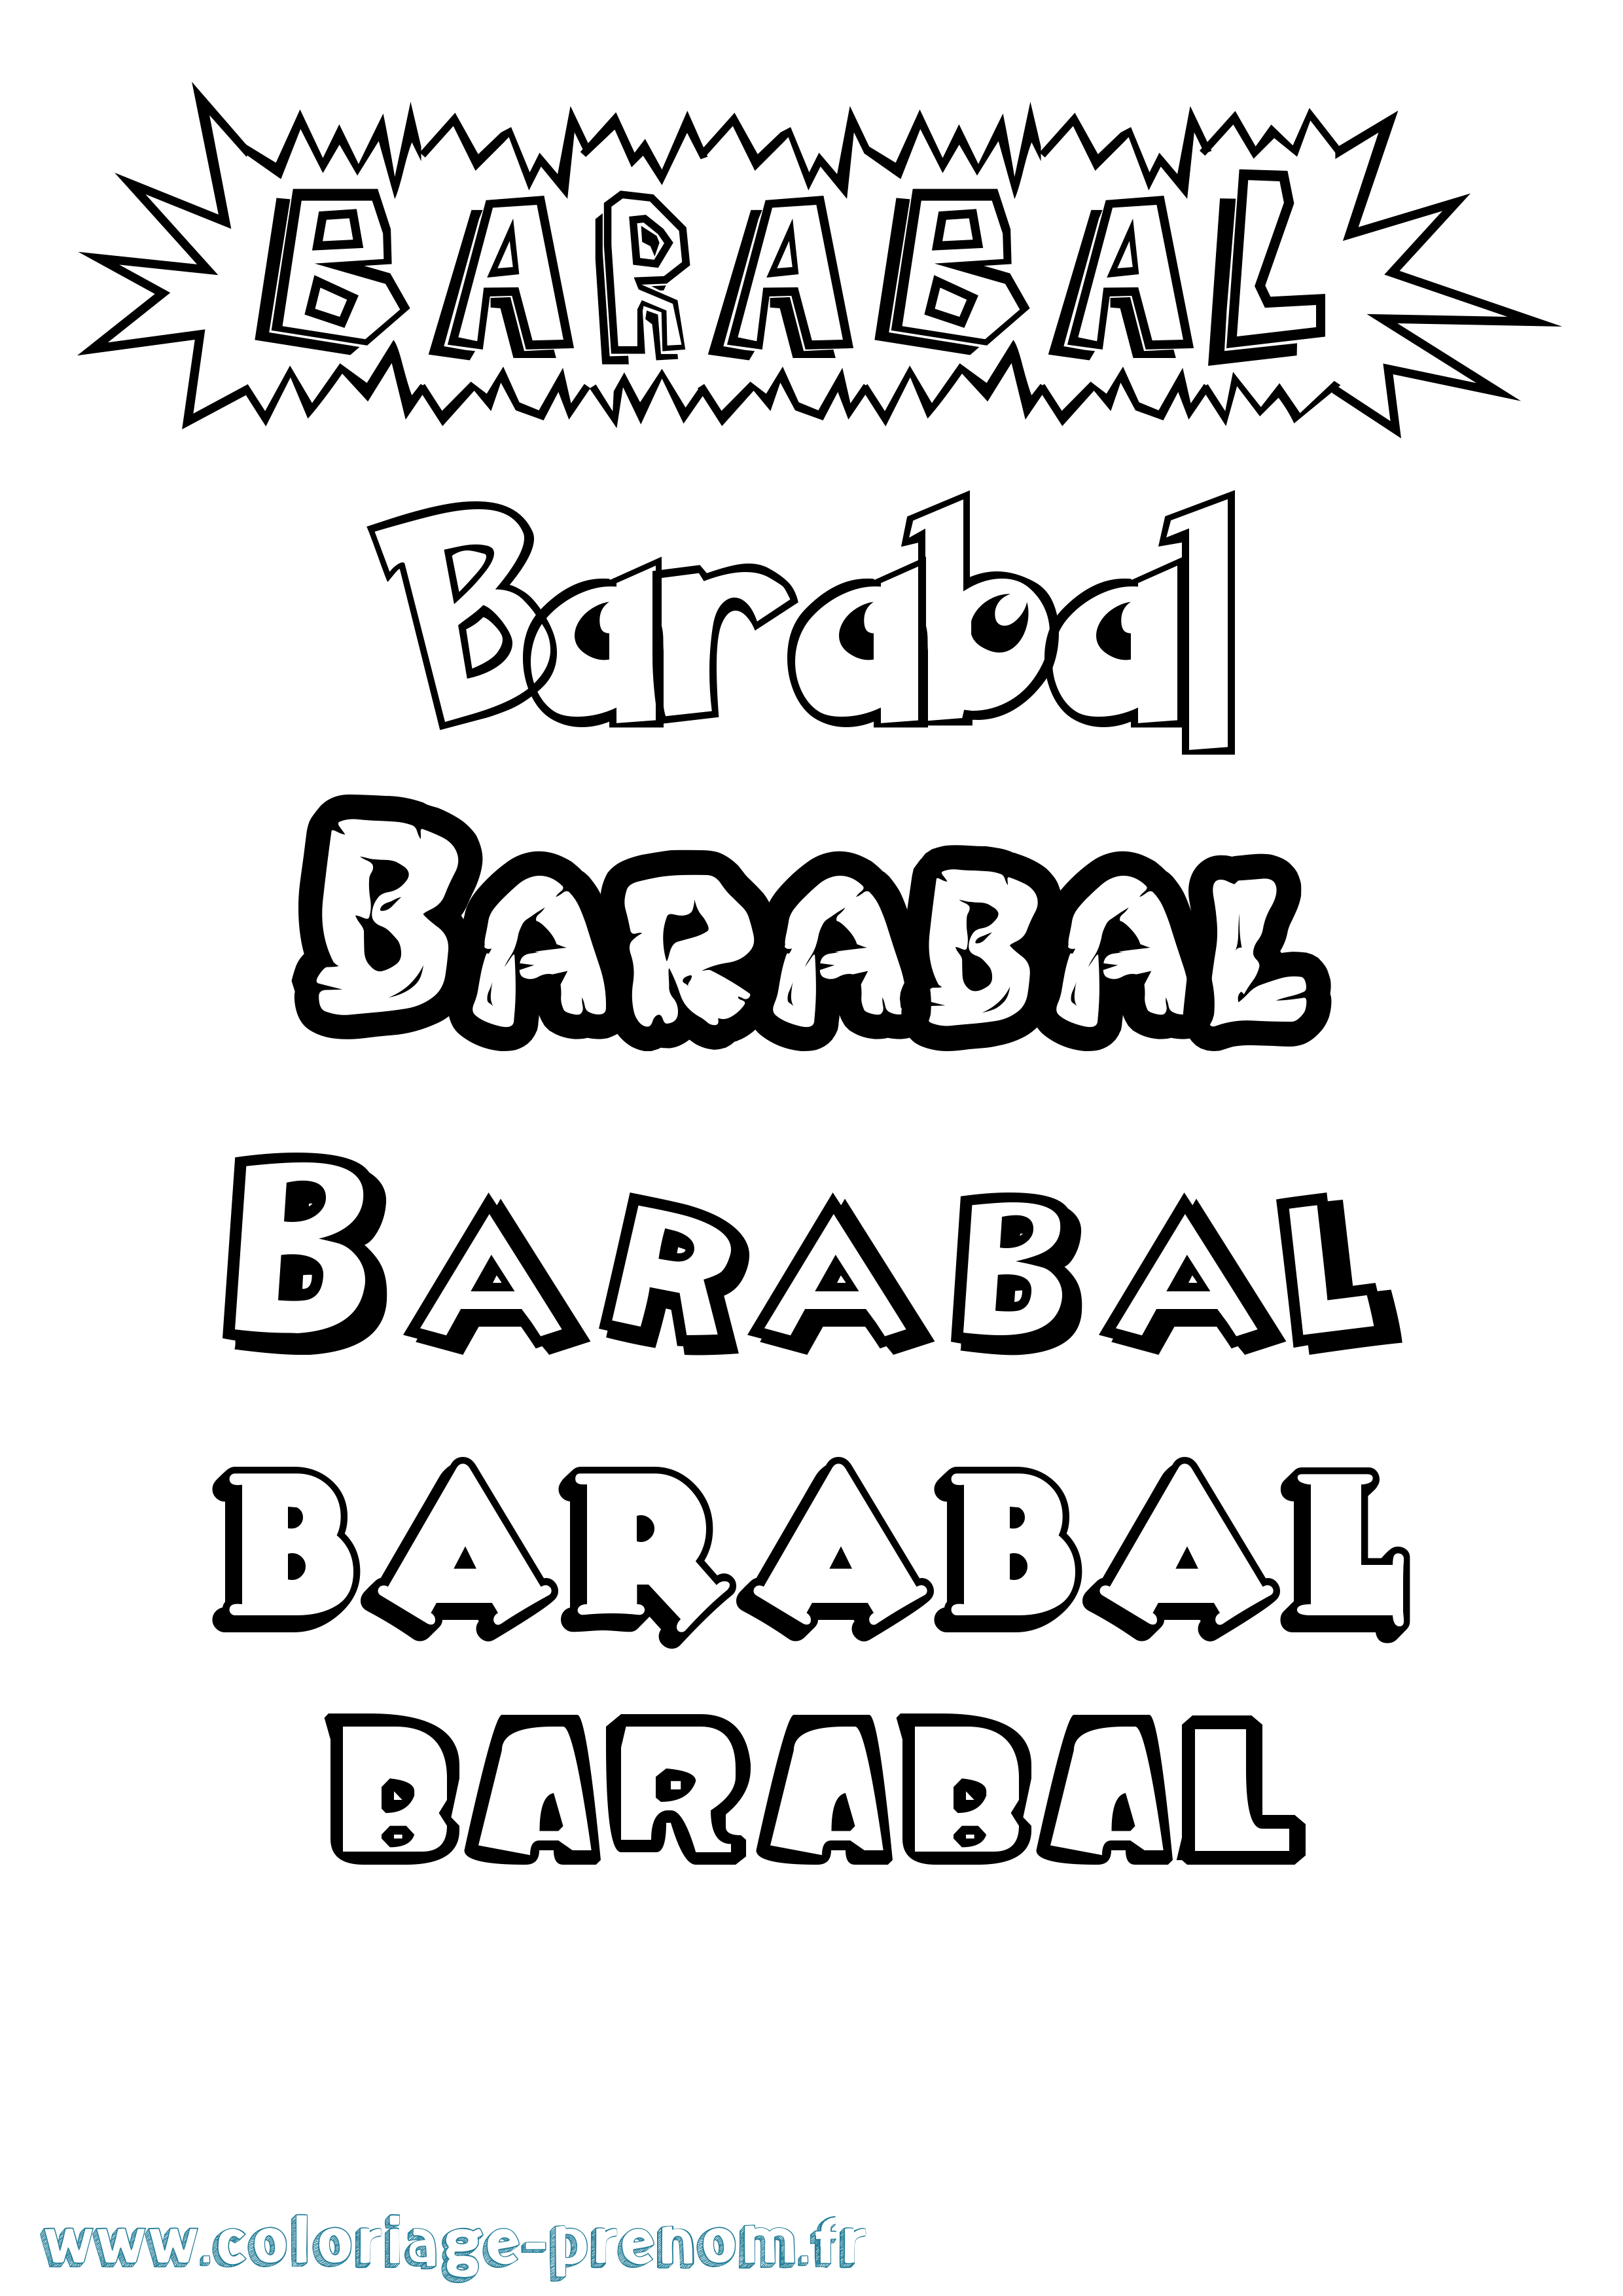 Coloriage prénom Barabal Dessin Animé